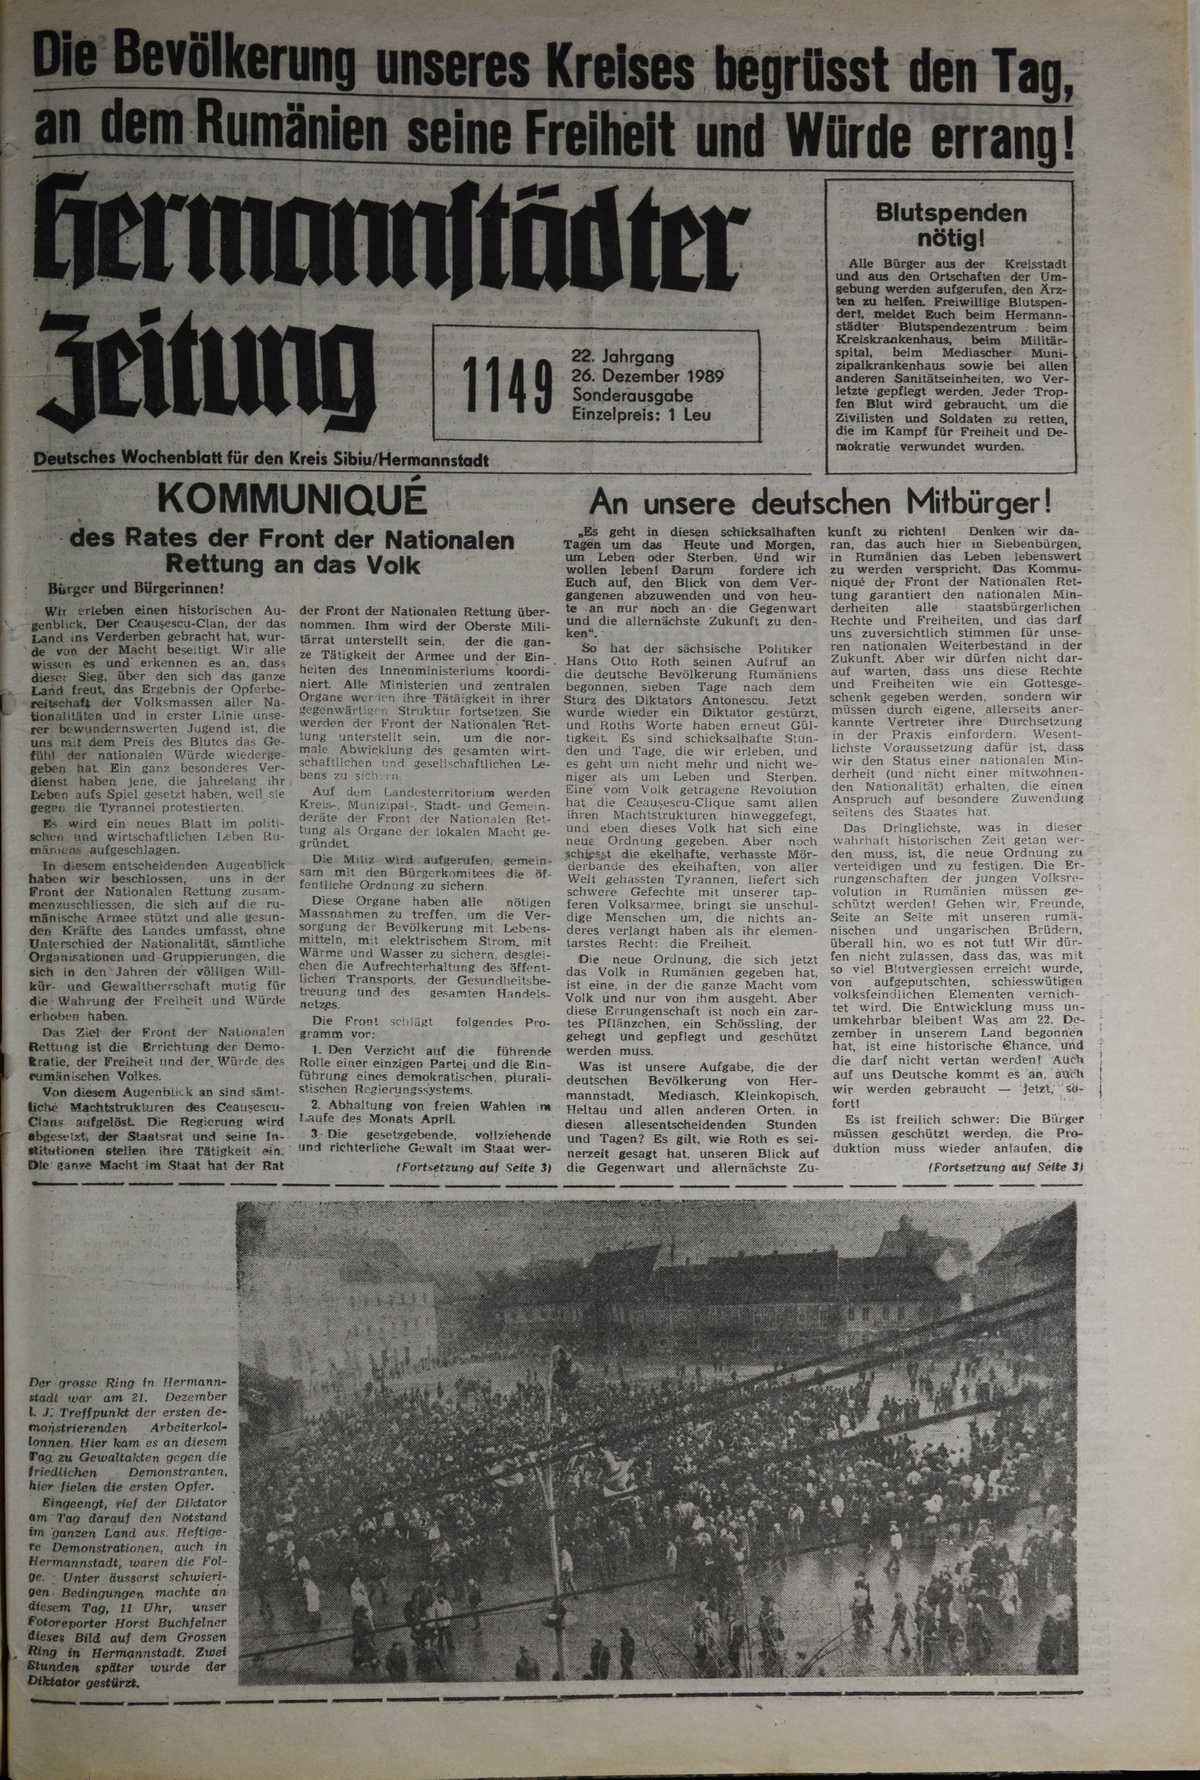 Die Hermannstädter Zeitung vom 26. Dezember 1989. © Beatrice Ungar